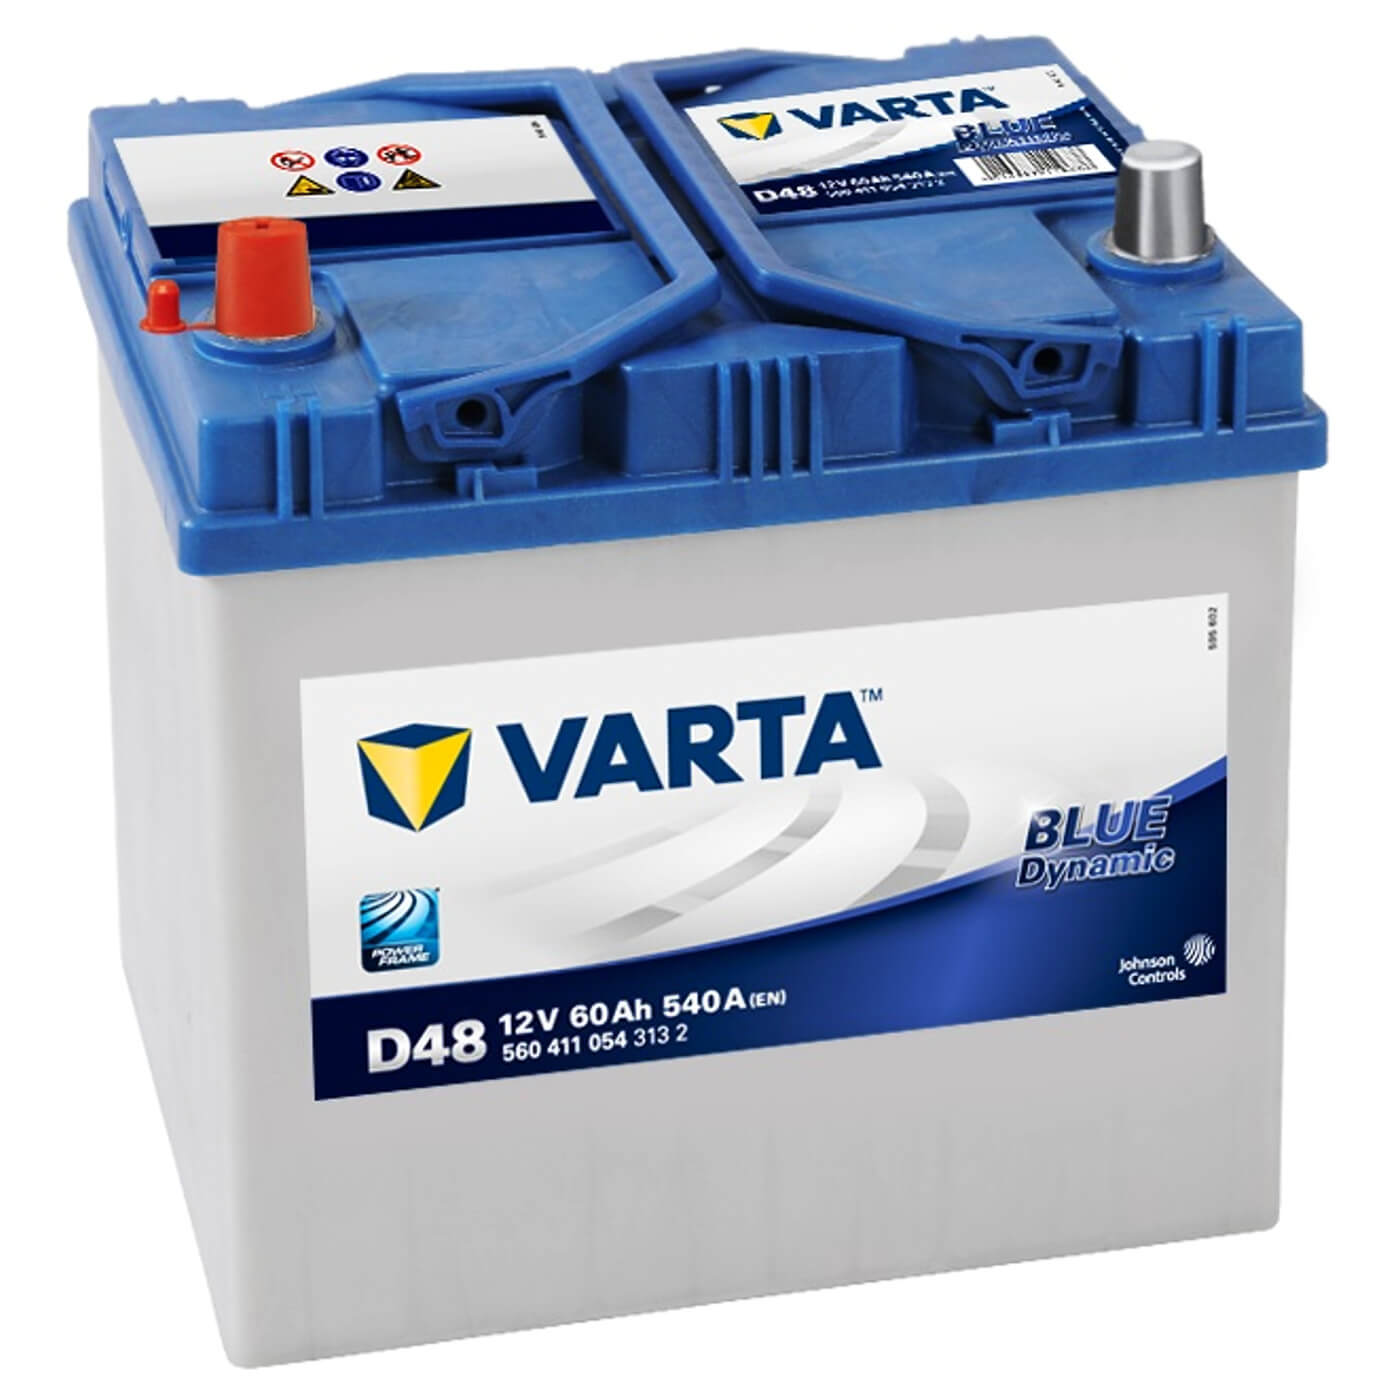 Varta D48 Blue Dynamic 12V 60Ah 540A/EN